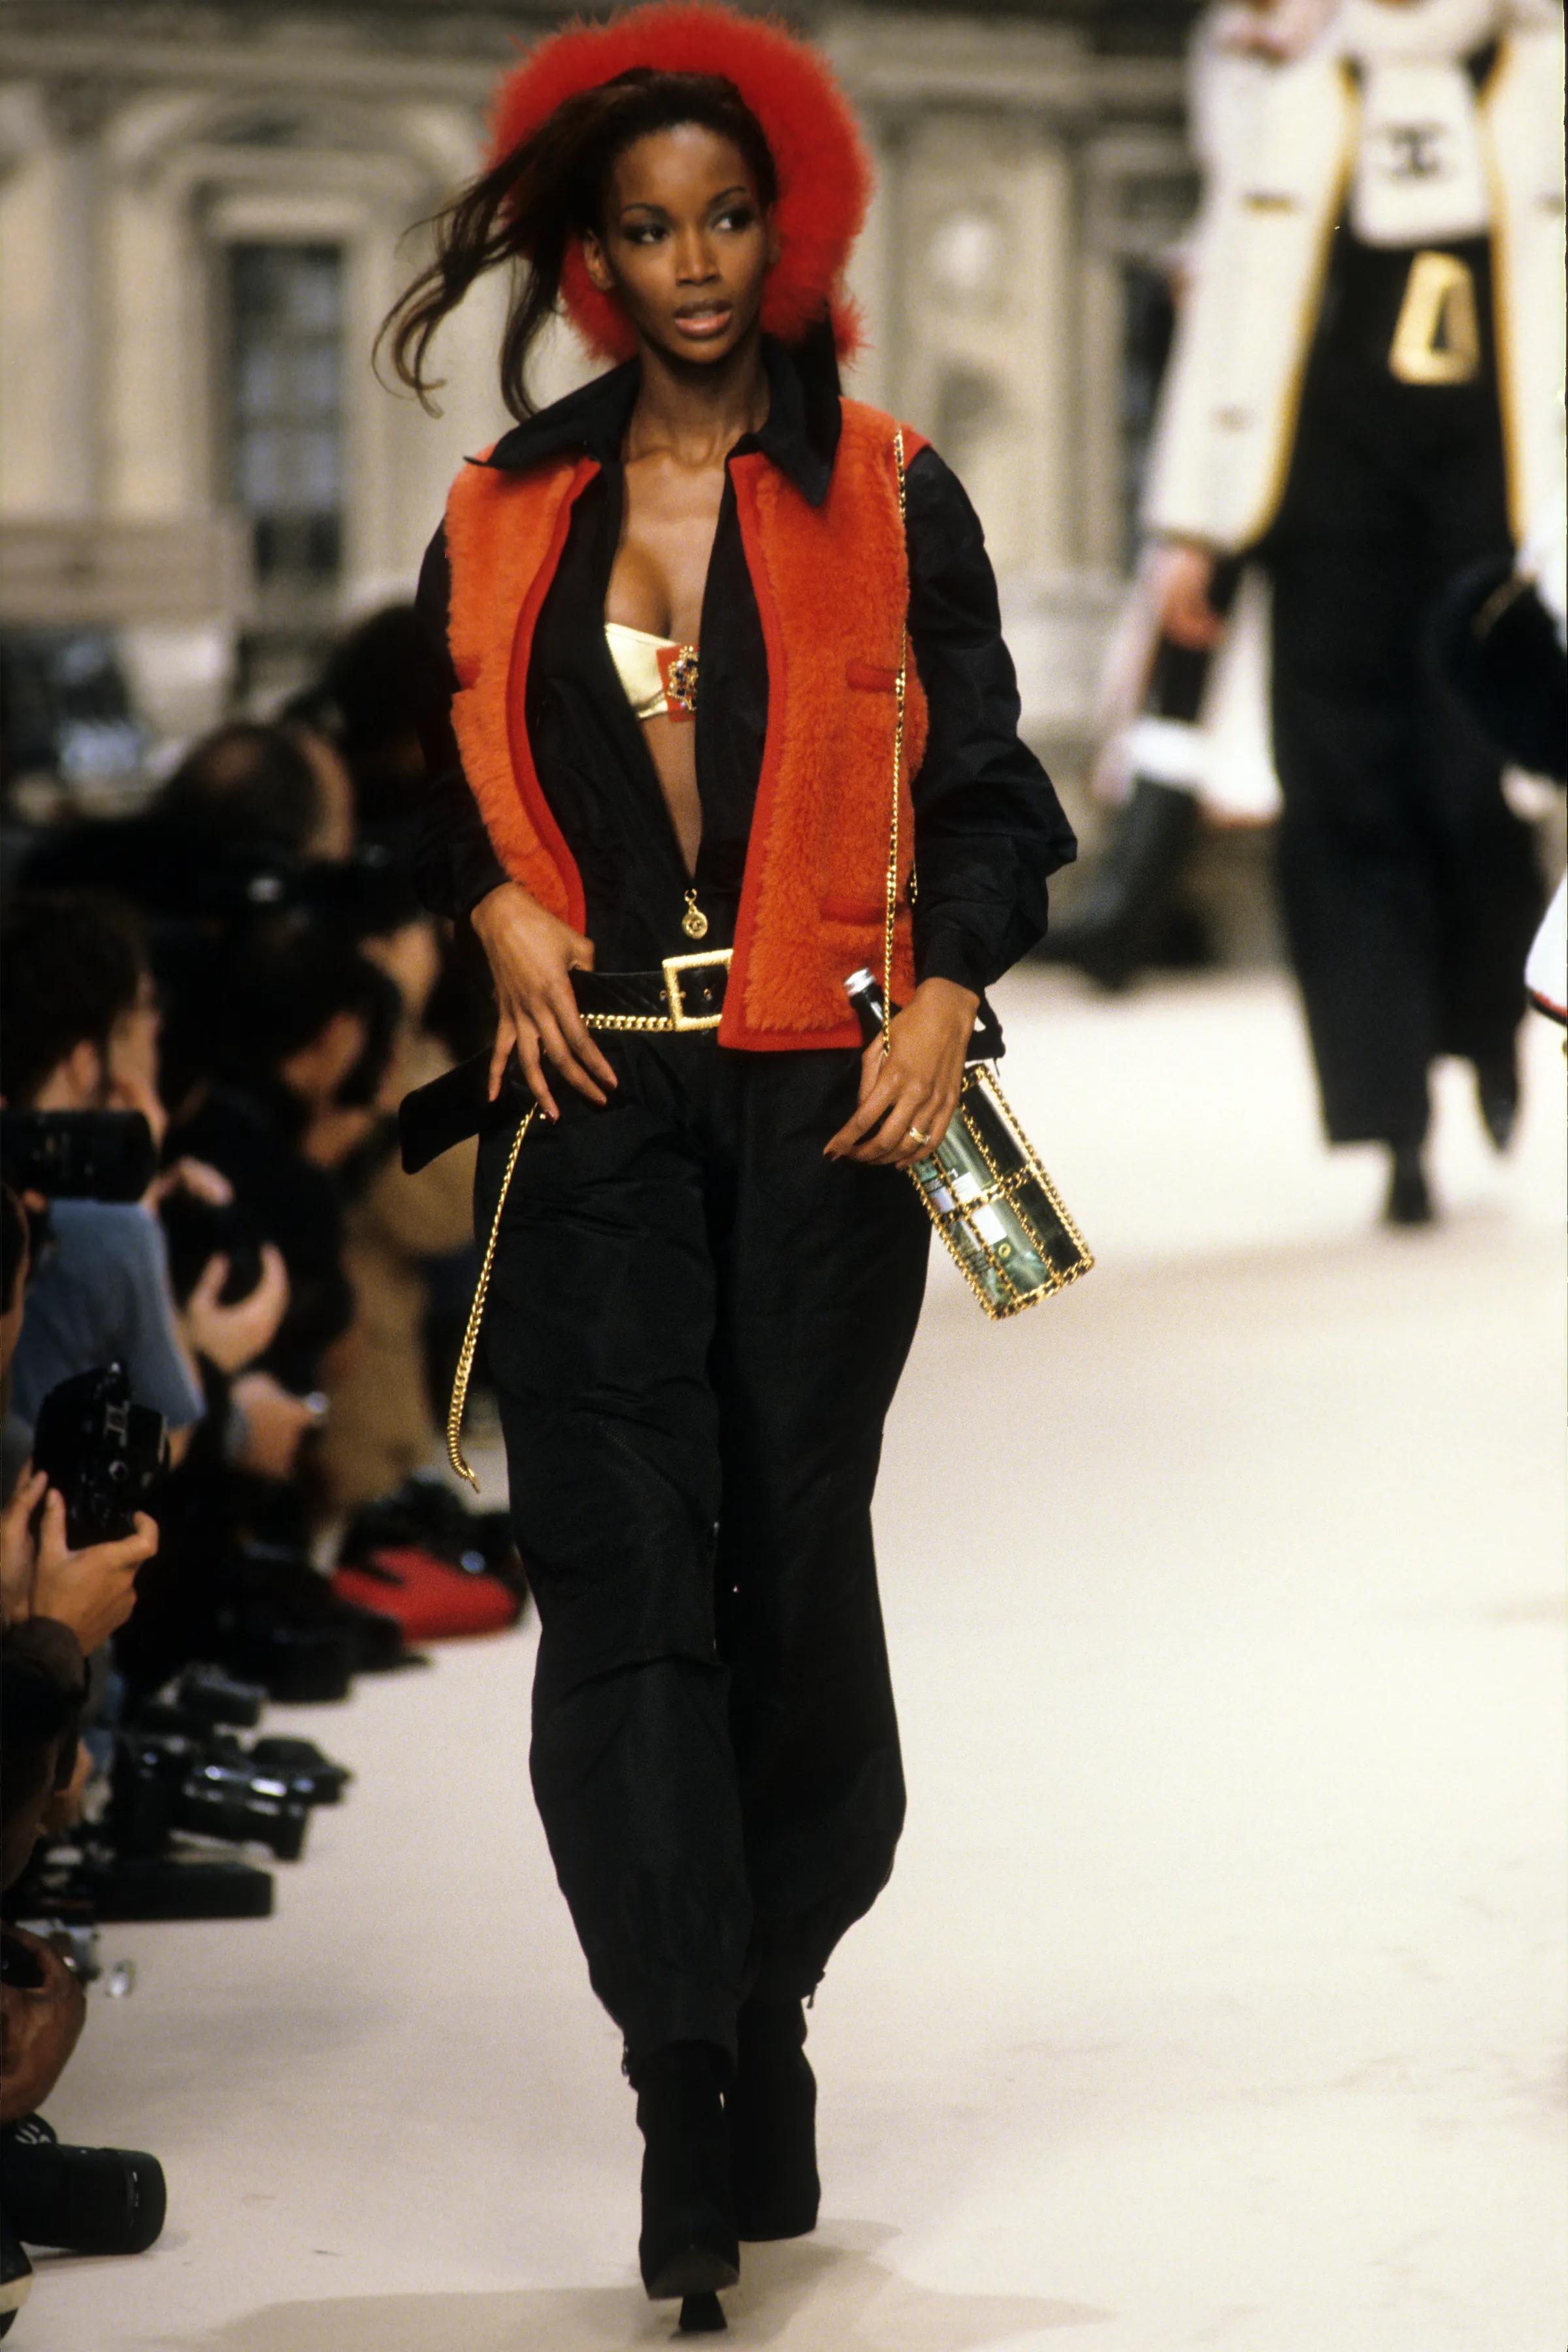 Chanel 1995 Spring Runway Rare Vintage Limited Edition Waist Belt Bum Bag

Année : 1994 (millésime de 30 ans)

Matériel doré
Cuir matelassé noir
Boucle texturée en métal doré
Chaîne à maillons suspendue avec pendentif
Fermeture à rabat, fermeture